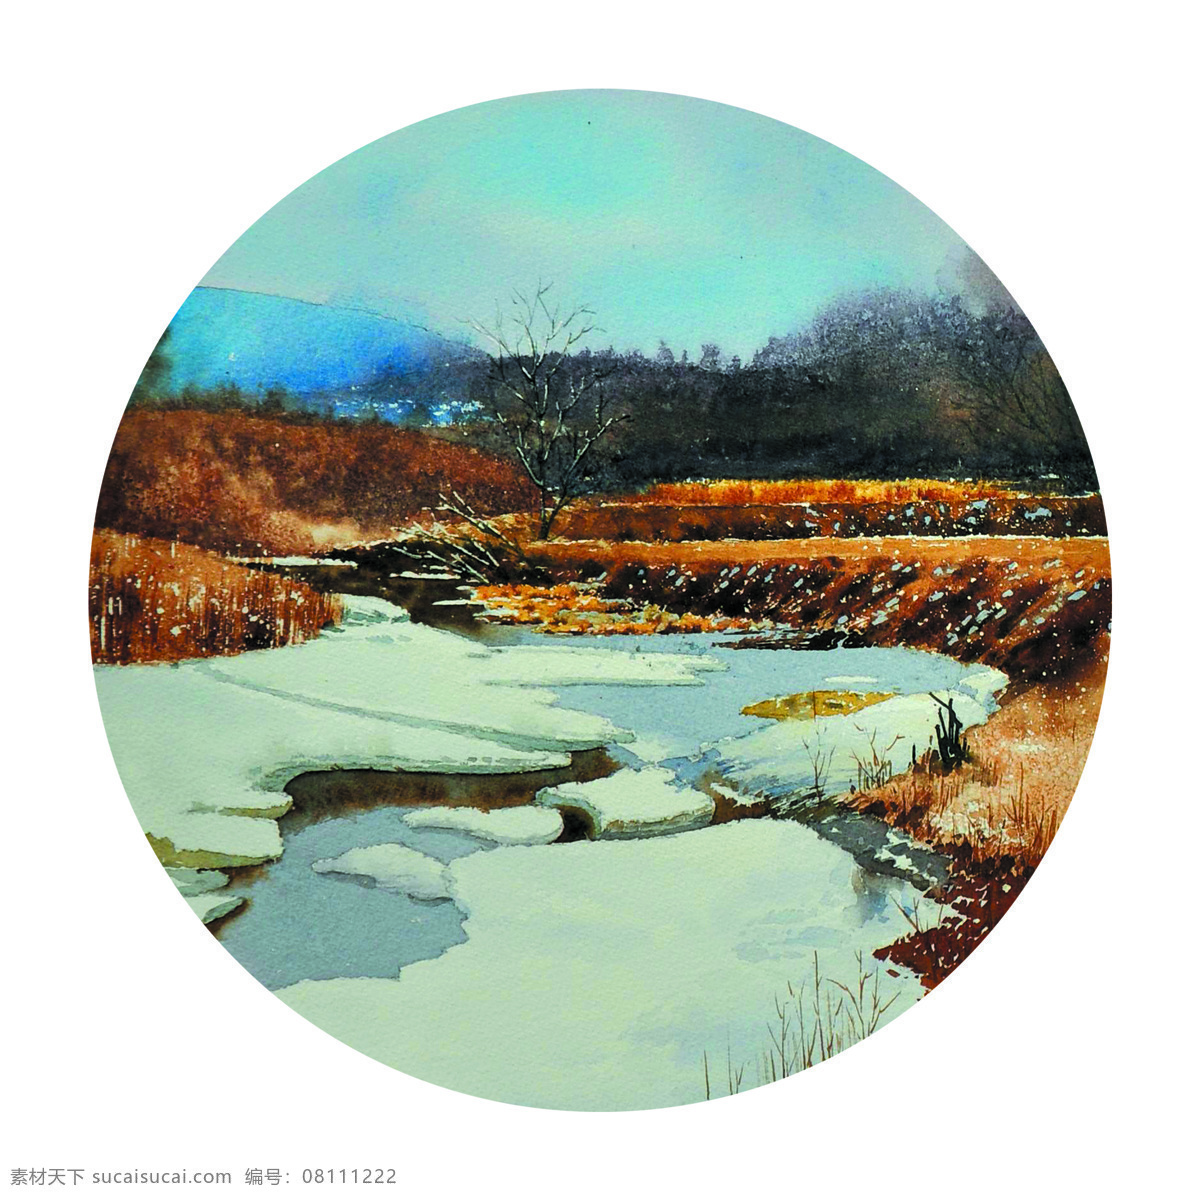 乡野春雪 美术 水彩画 风景 冬天 山野 溪流 大冰块 树林 文化艺术 绘画书法